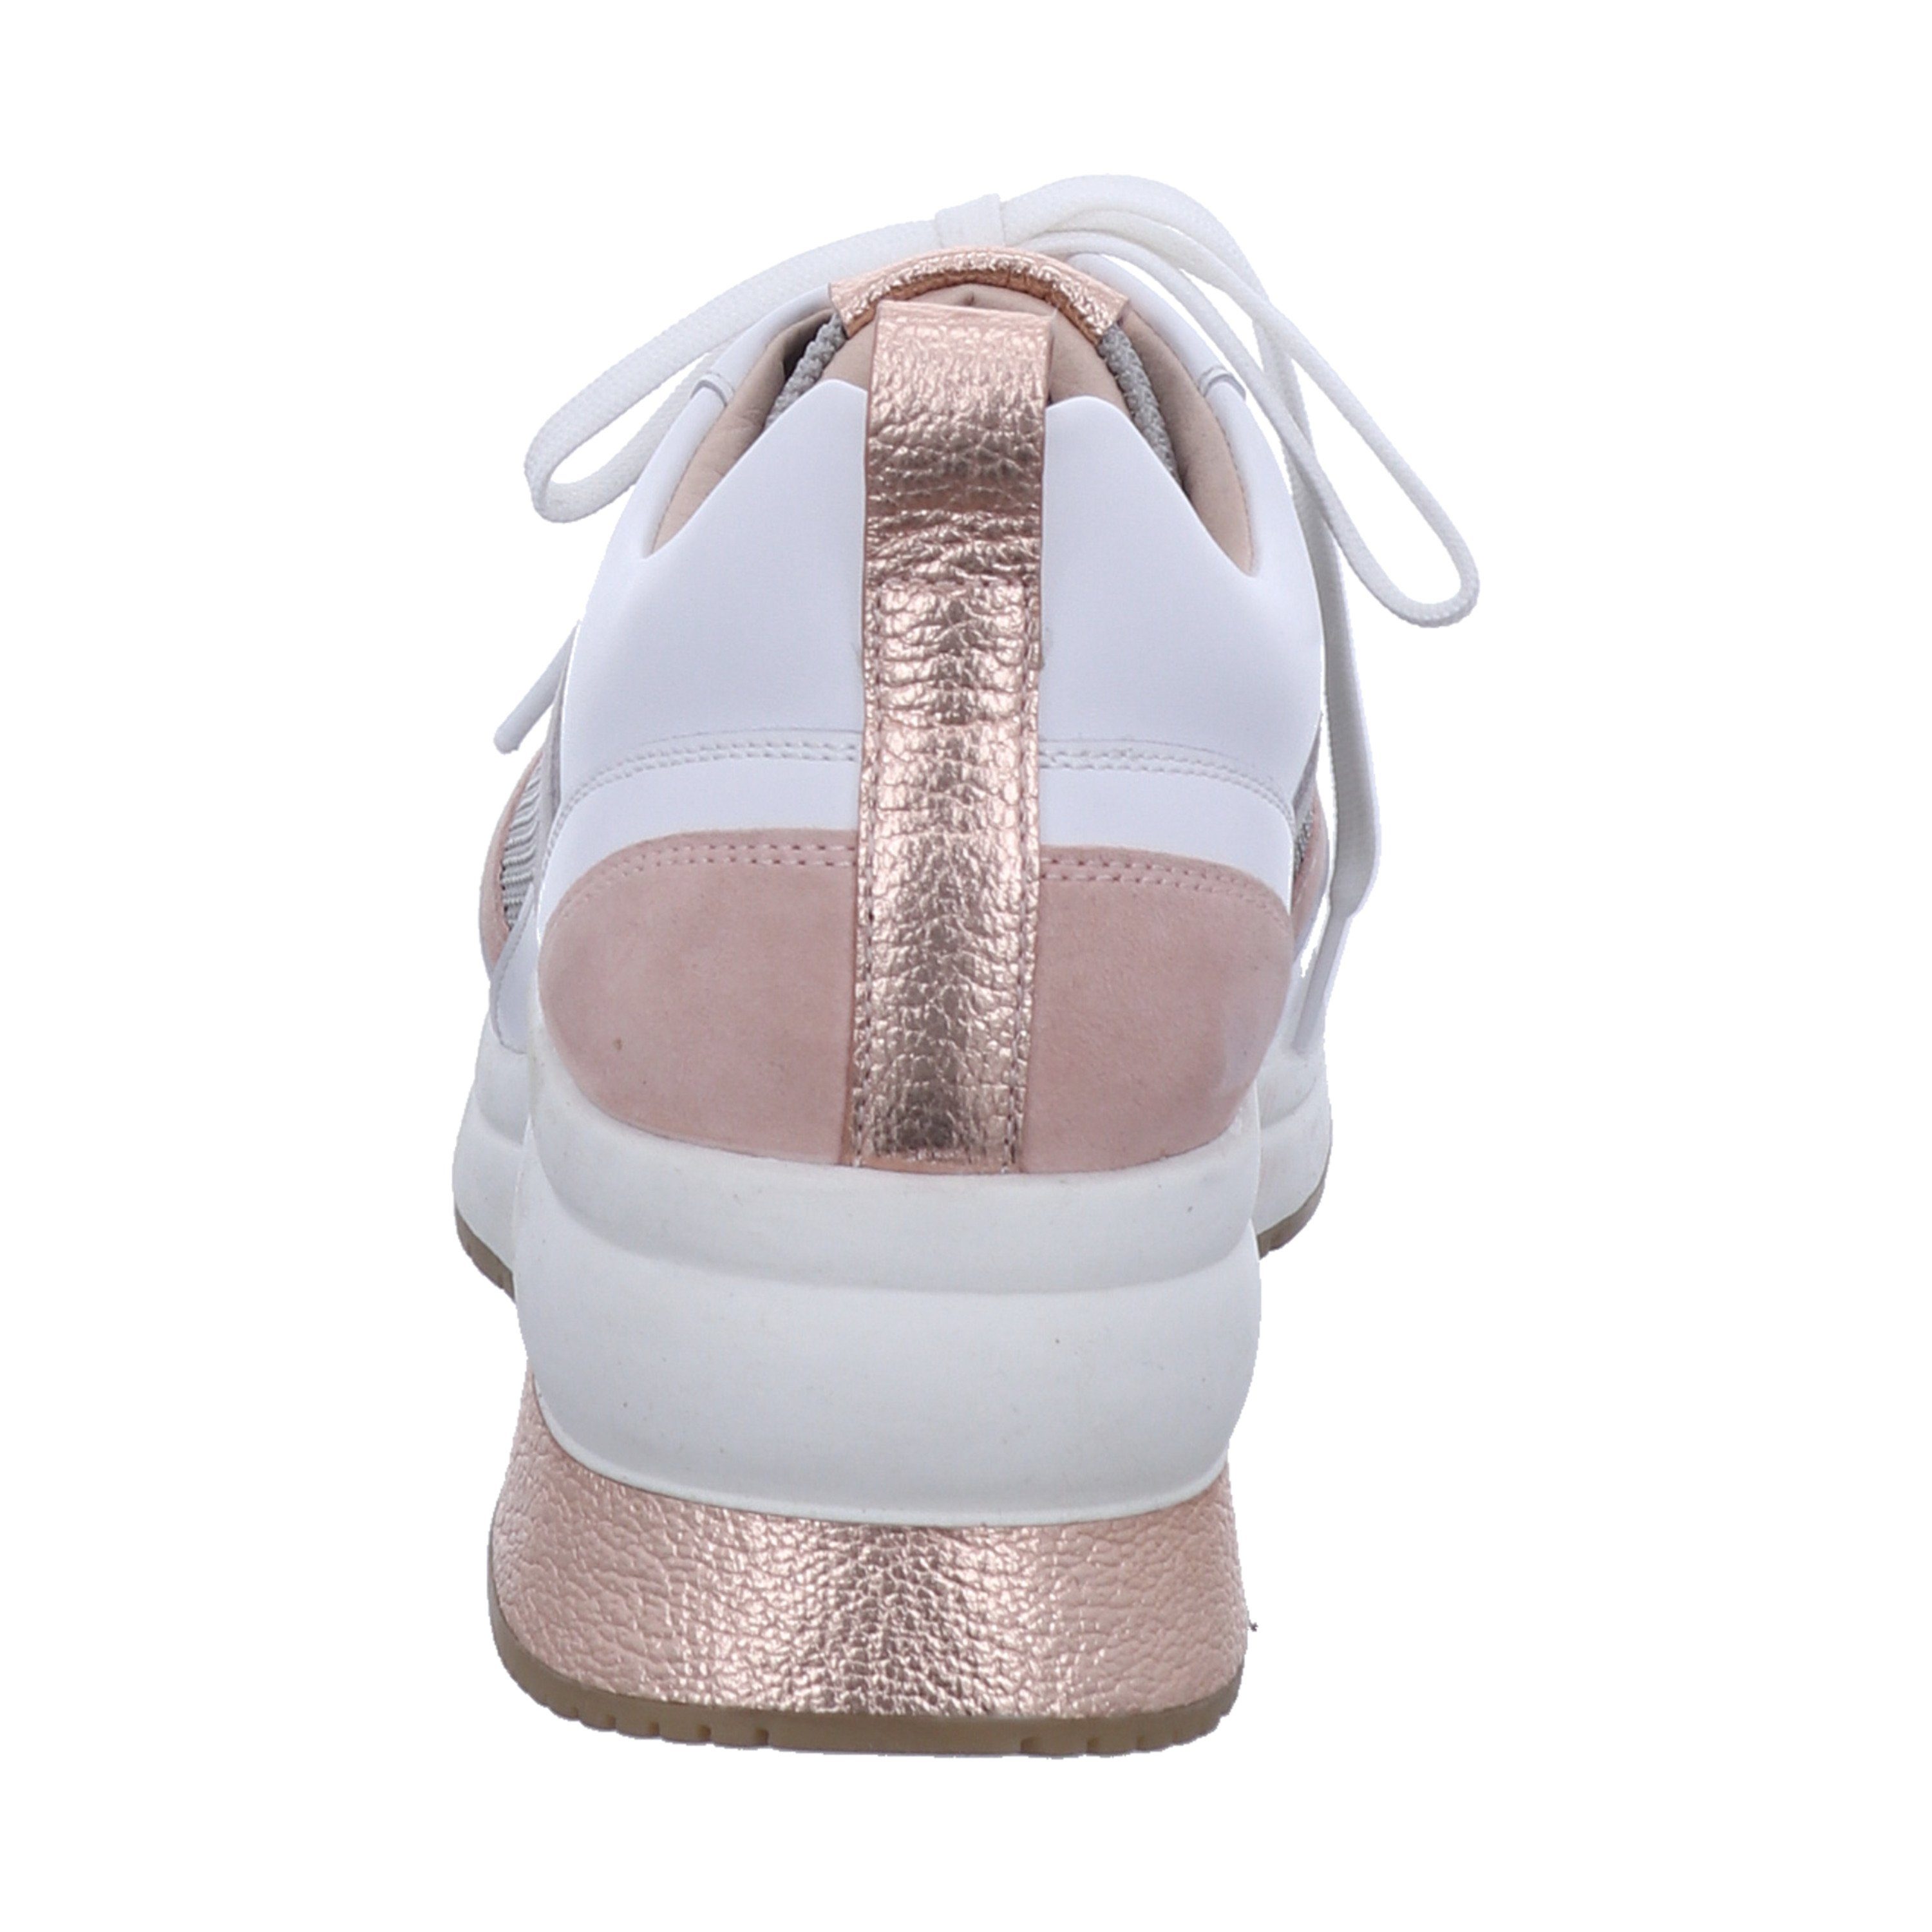 Schuhe Sneaker GERRY WEBER Affi 01, weiß-rosa Sneaker